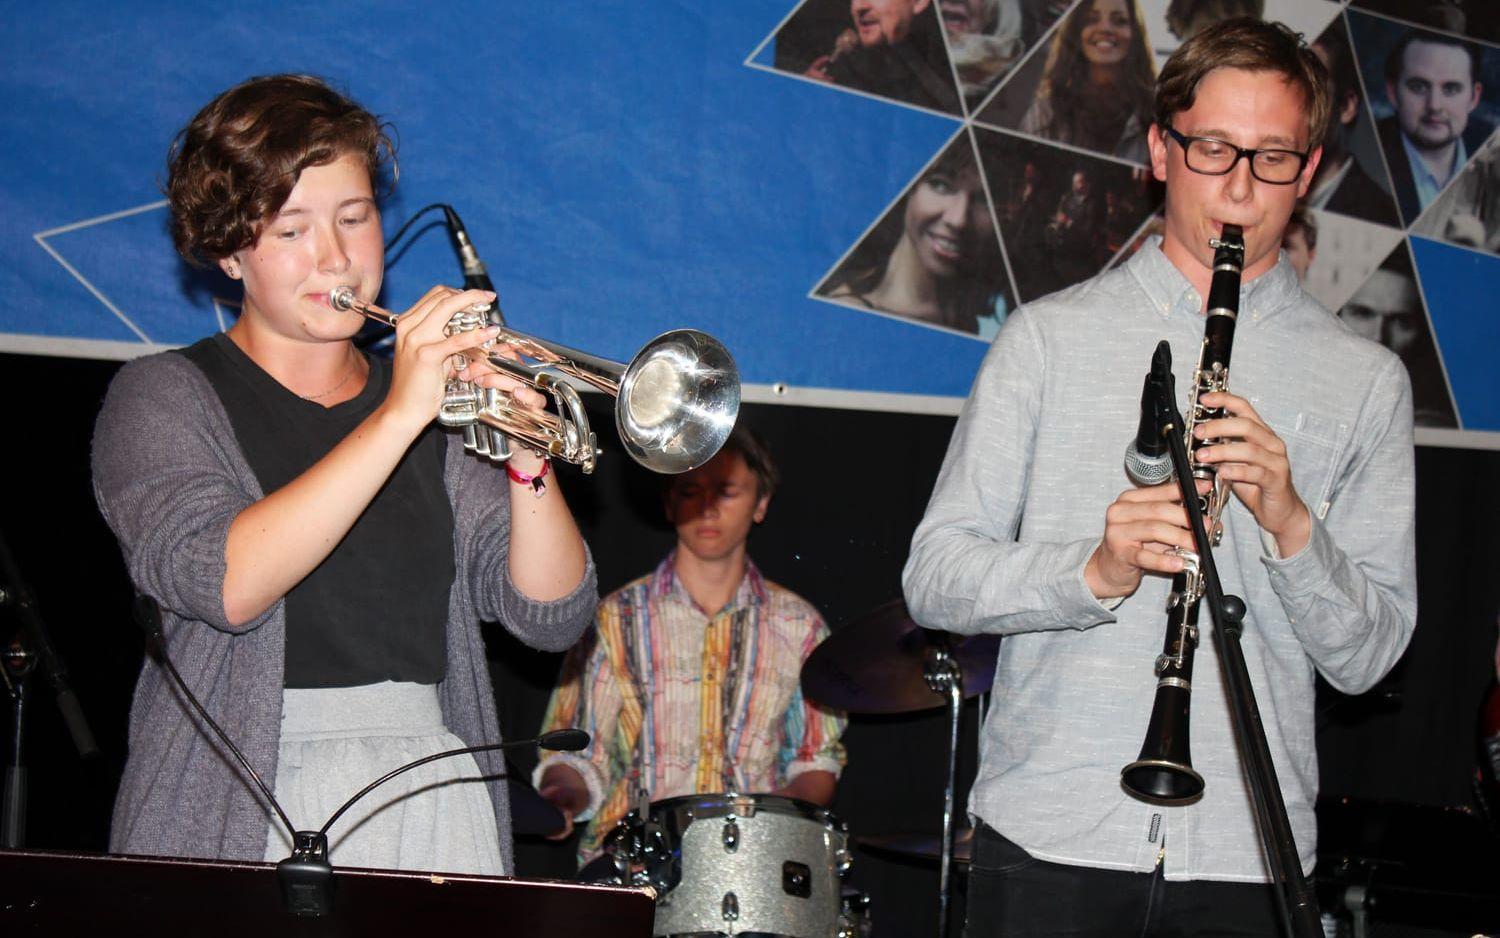 Samspelet satt klockrent mellan Frida Lygner på trumpet och Linus Sjösten på klarinett.